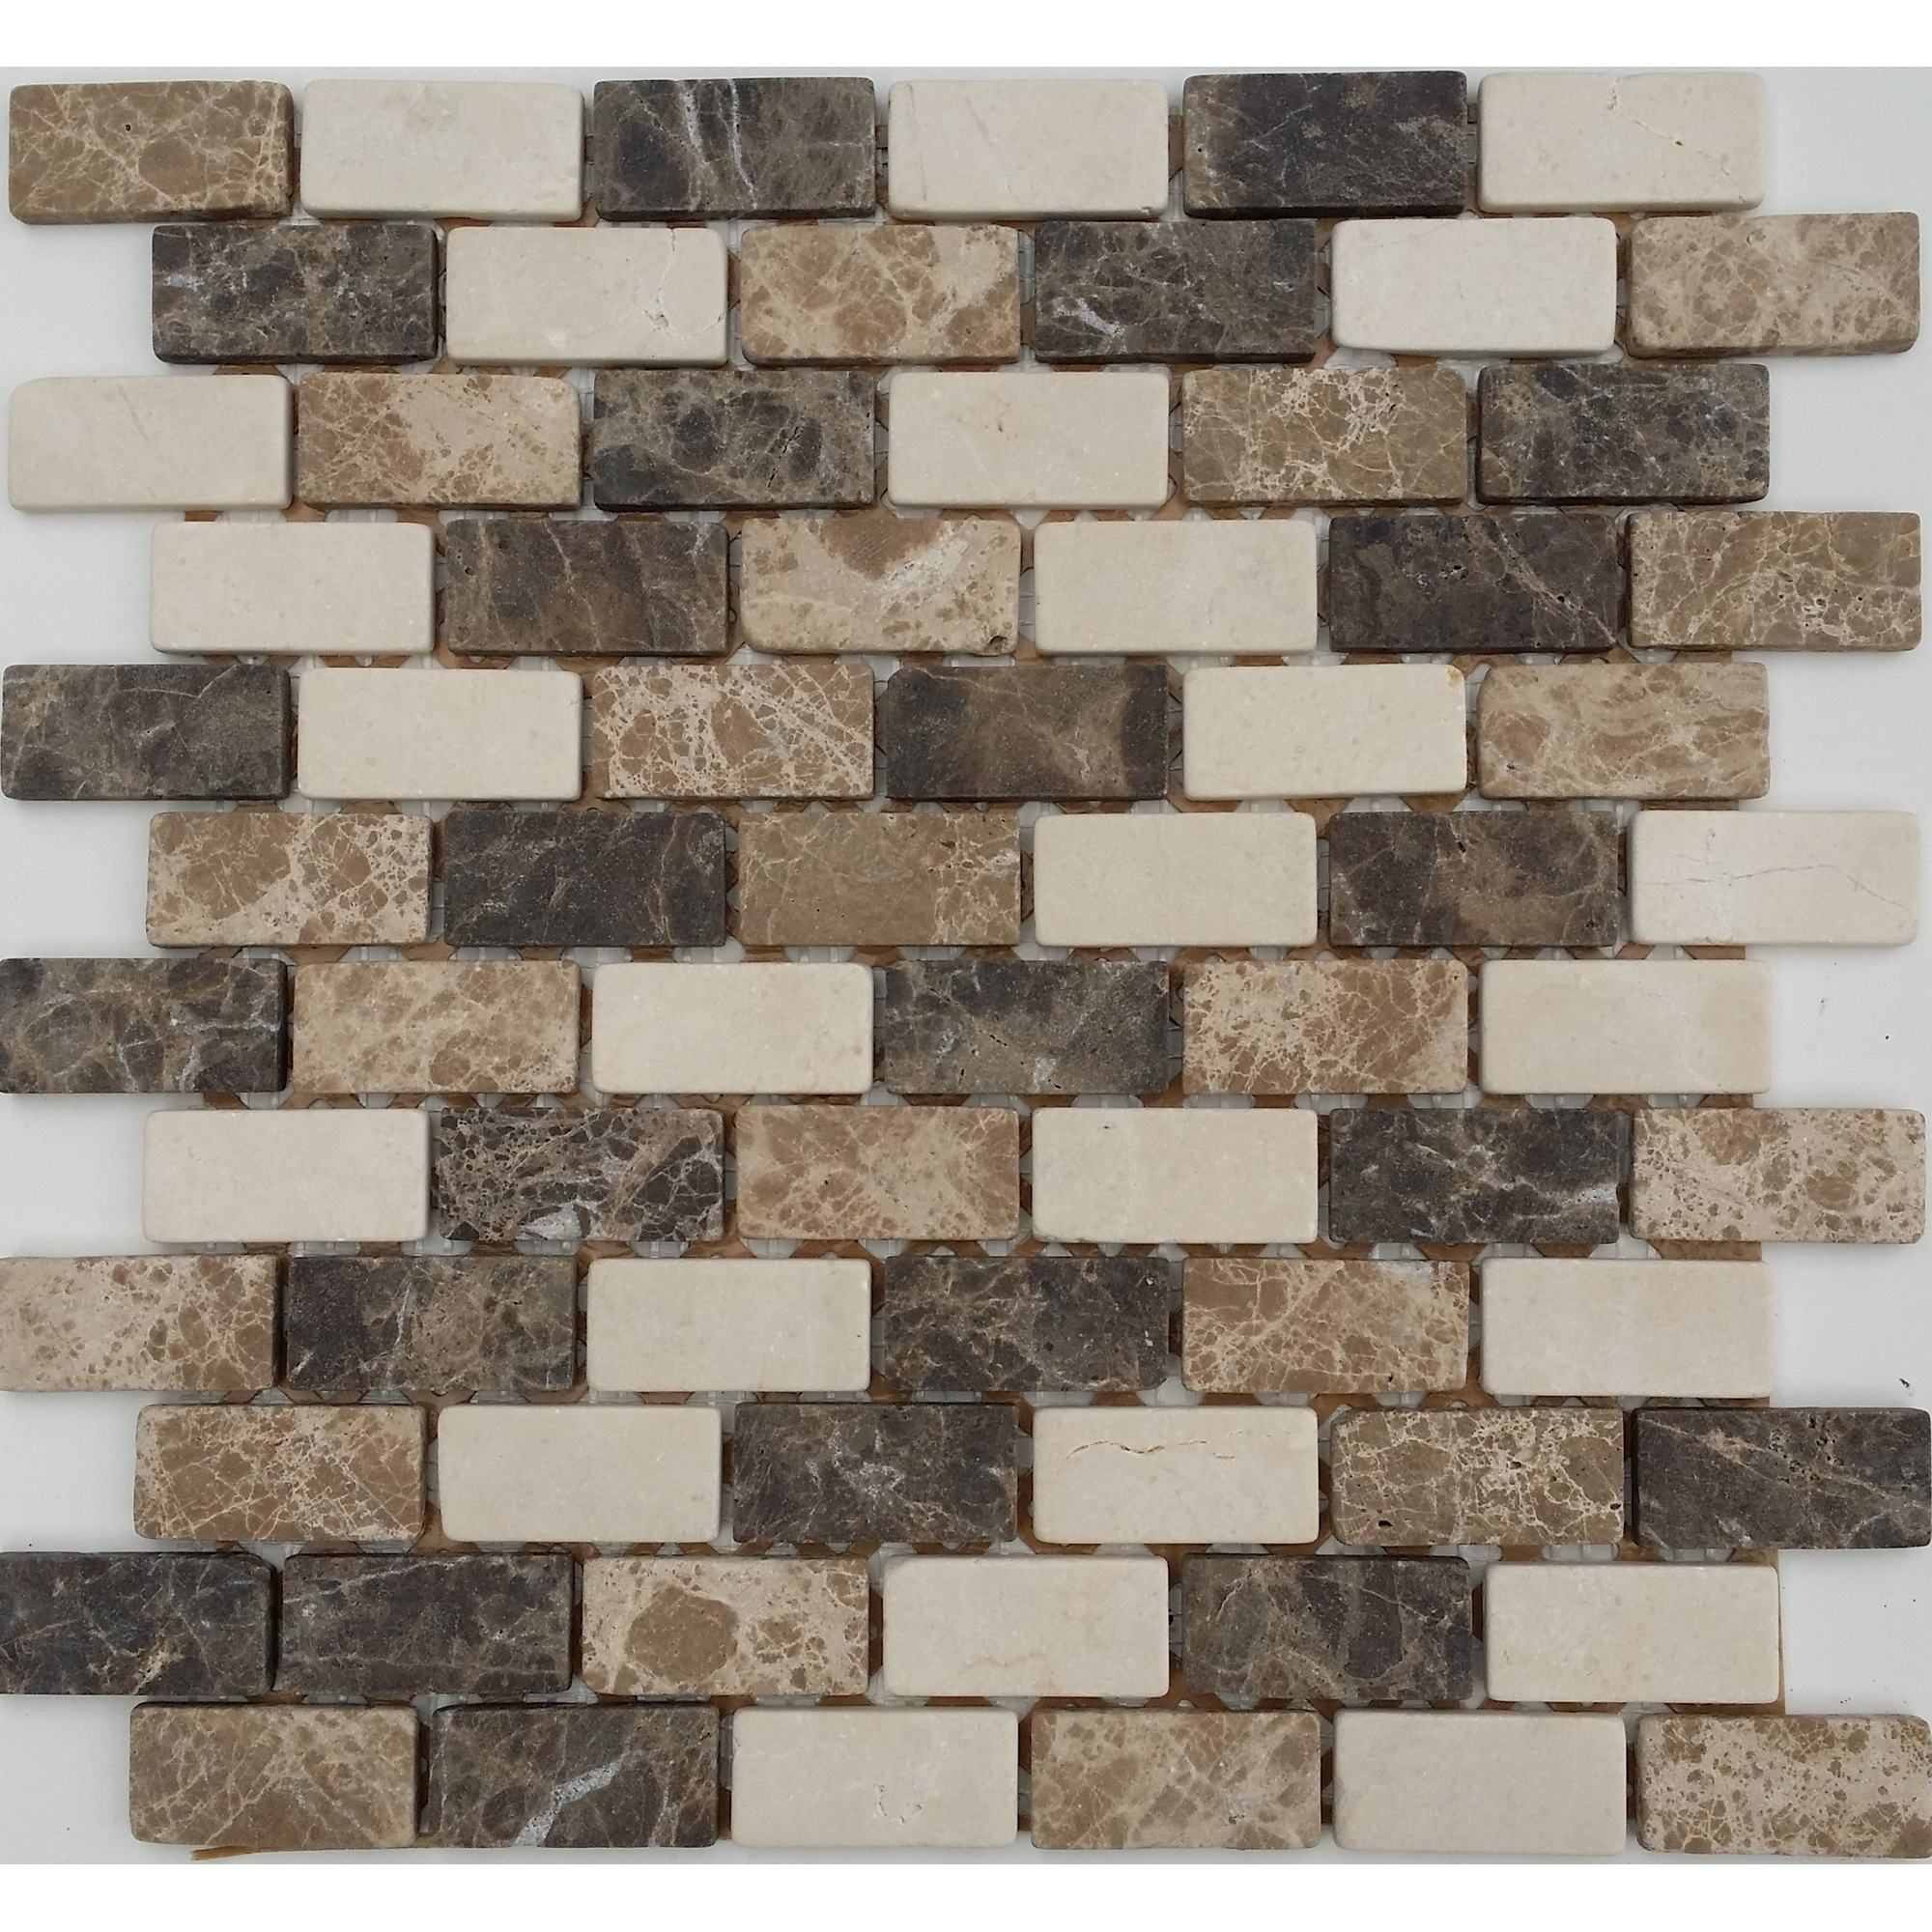 Mosaikfliese 'Java' Naturstein beige/braun 30 x 30 cm + product picture